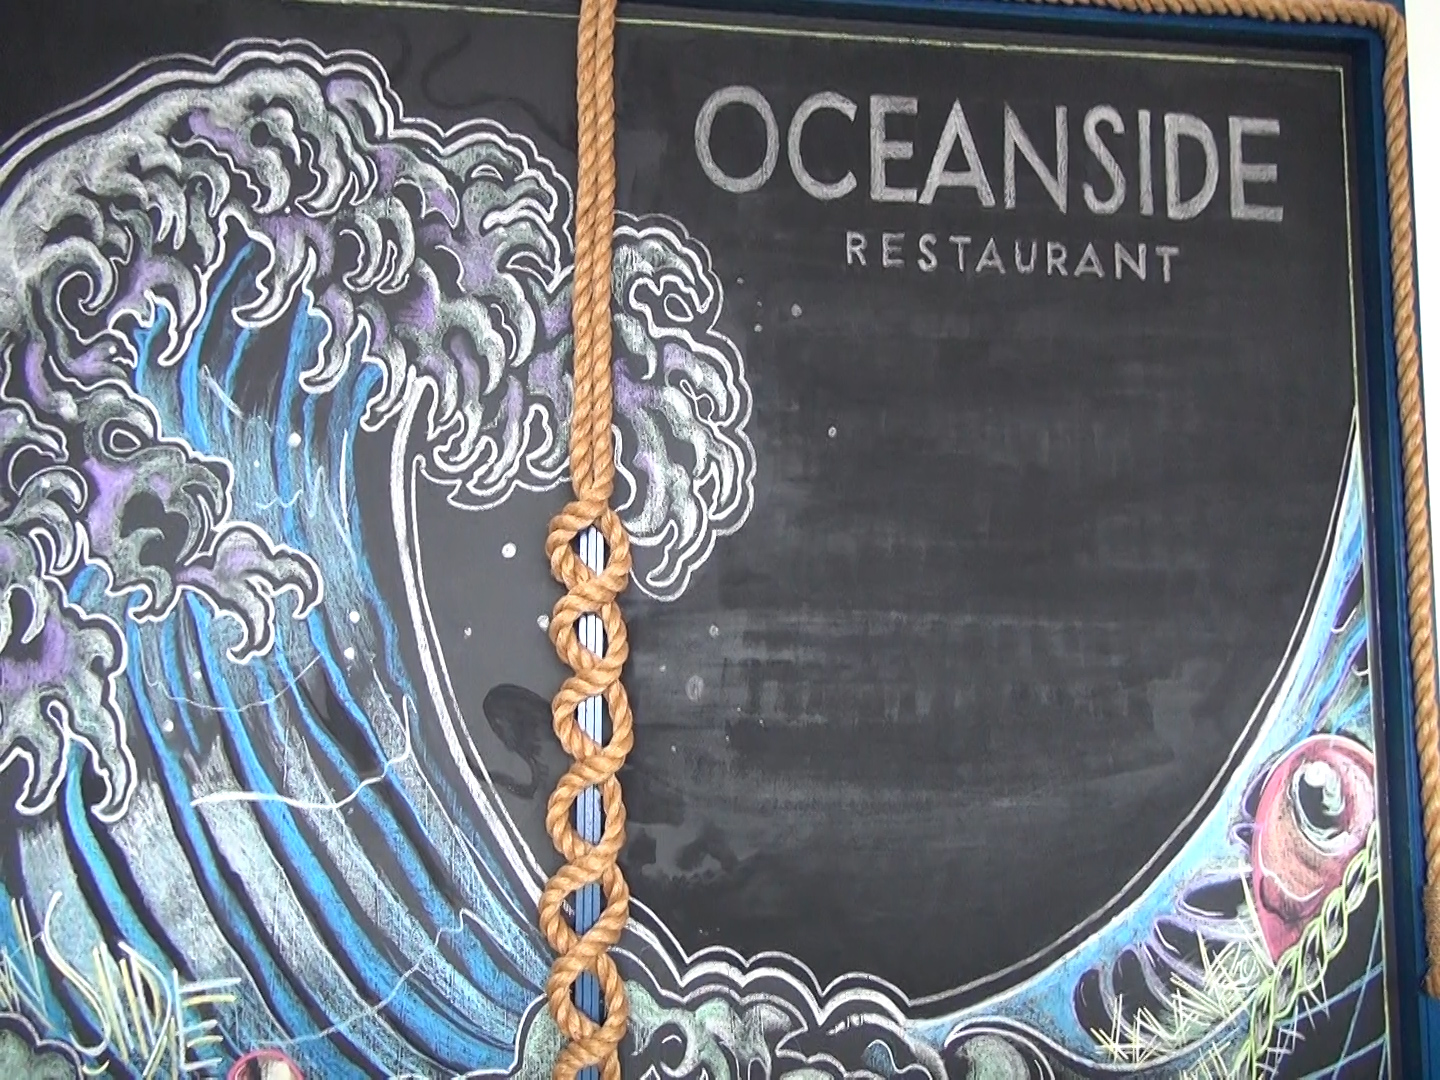 Artwork at Oceanside in Māʻalaea. Photo by Kiaora Bohlool.